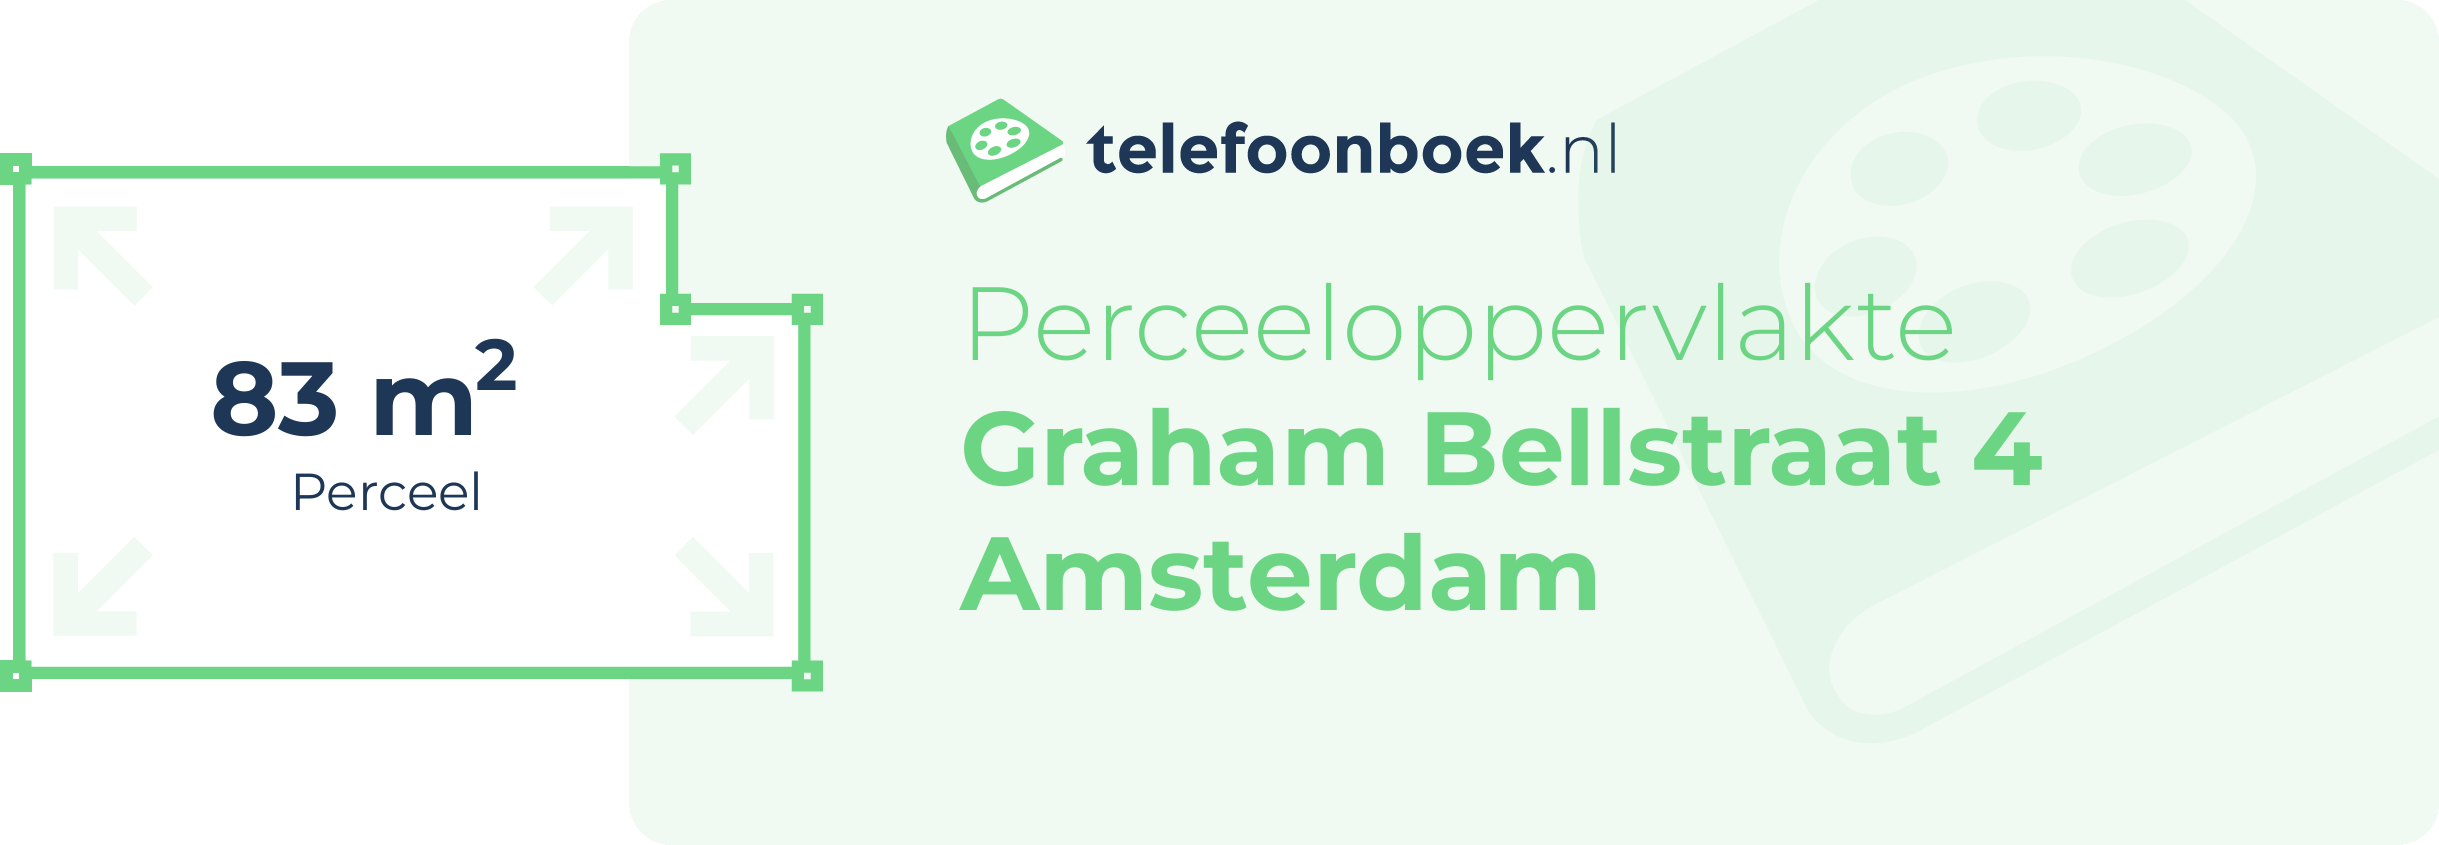 Perceeloppervlakte Graham Bellstraat 4 Amsterdam